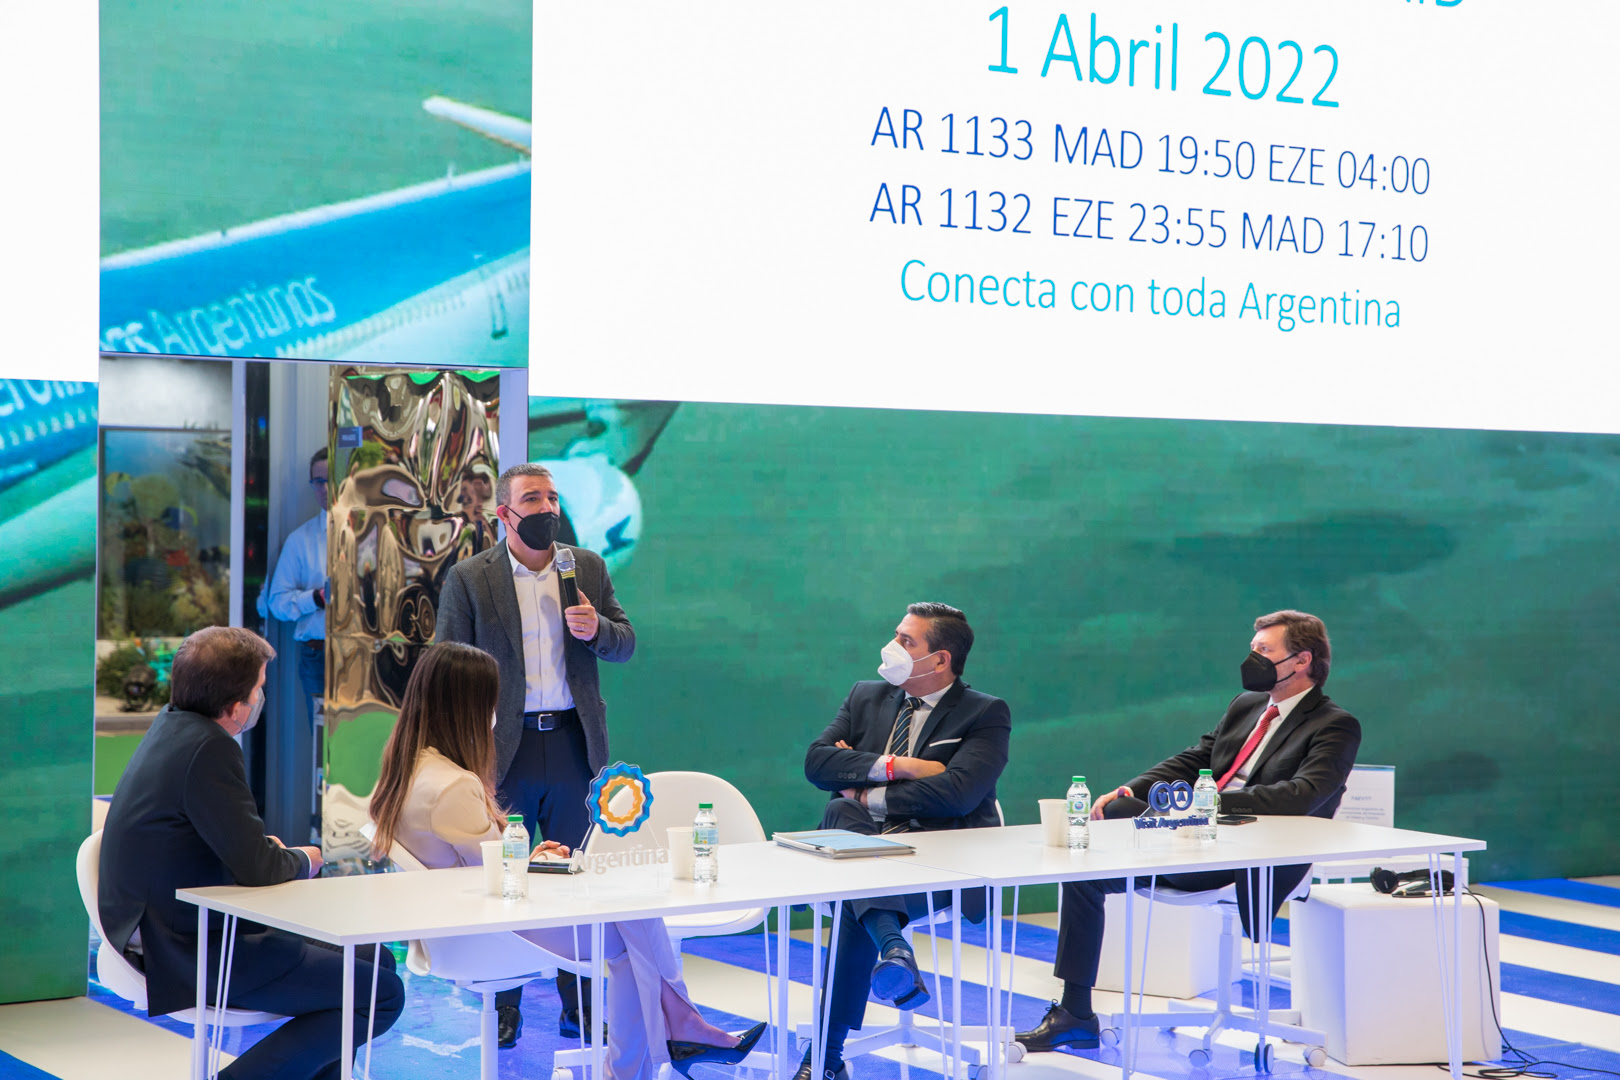 FITUR 2022: Desde Abril, Aerolíneas Argentinas tendrá un vuelo diario Madrid-Buenos Aires y beneficios para touroperadores europeos para que visiten el país